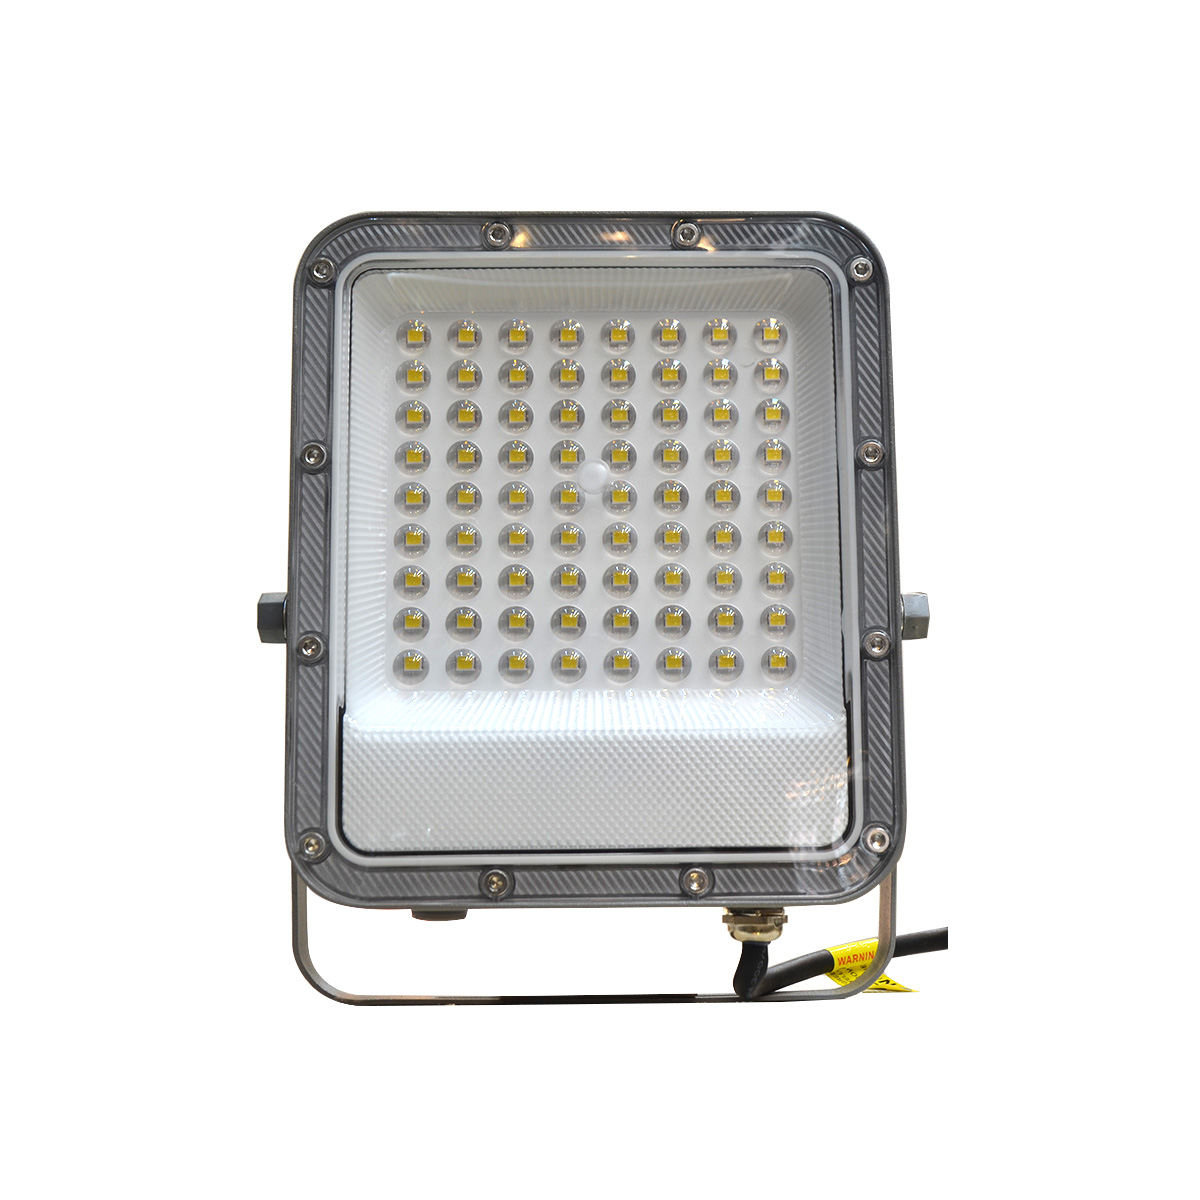 LED Flood Light SMD2835 200W 6500K (Daylight) 